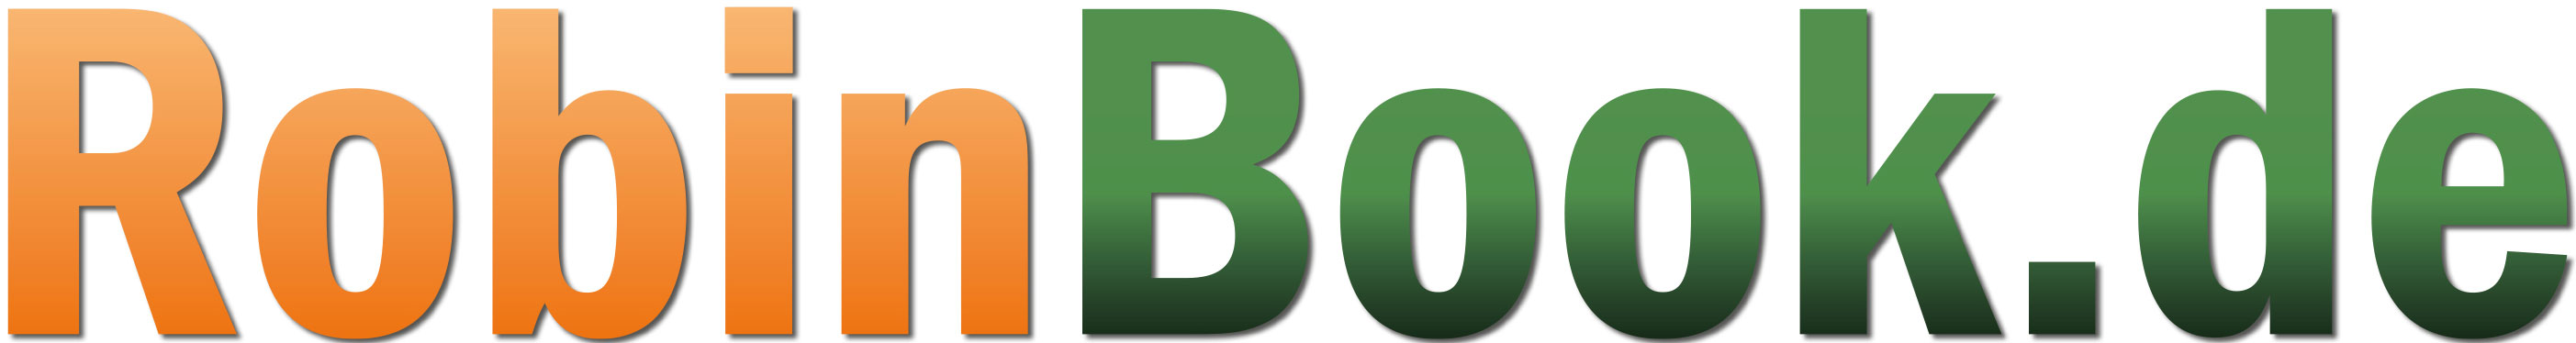 RobinBook.de Logo